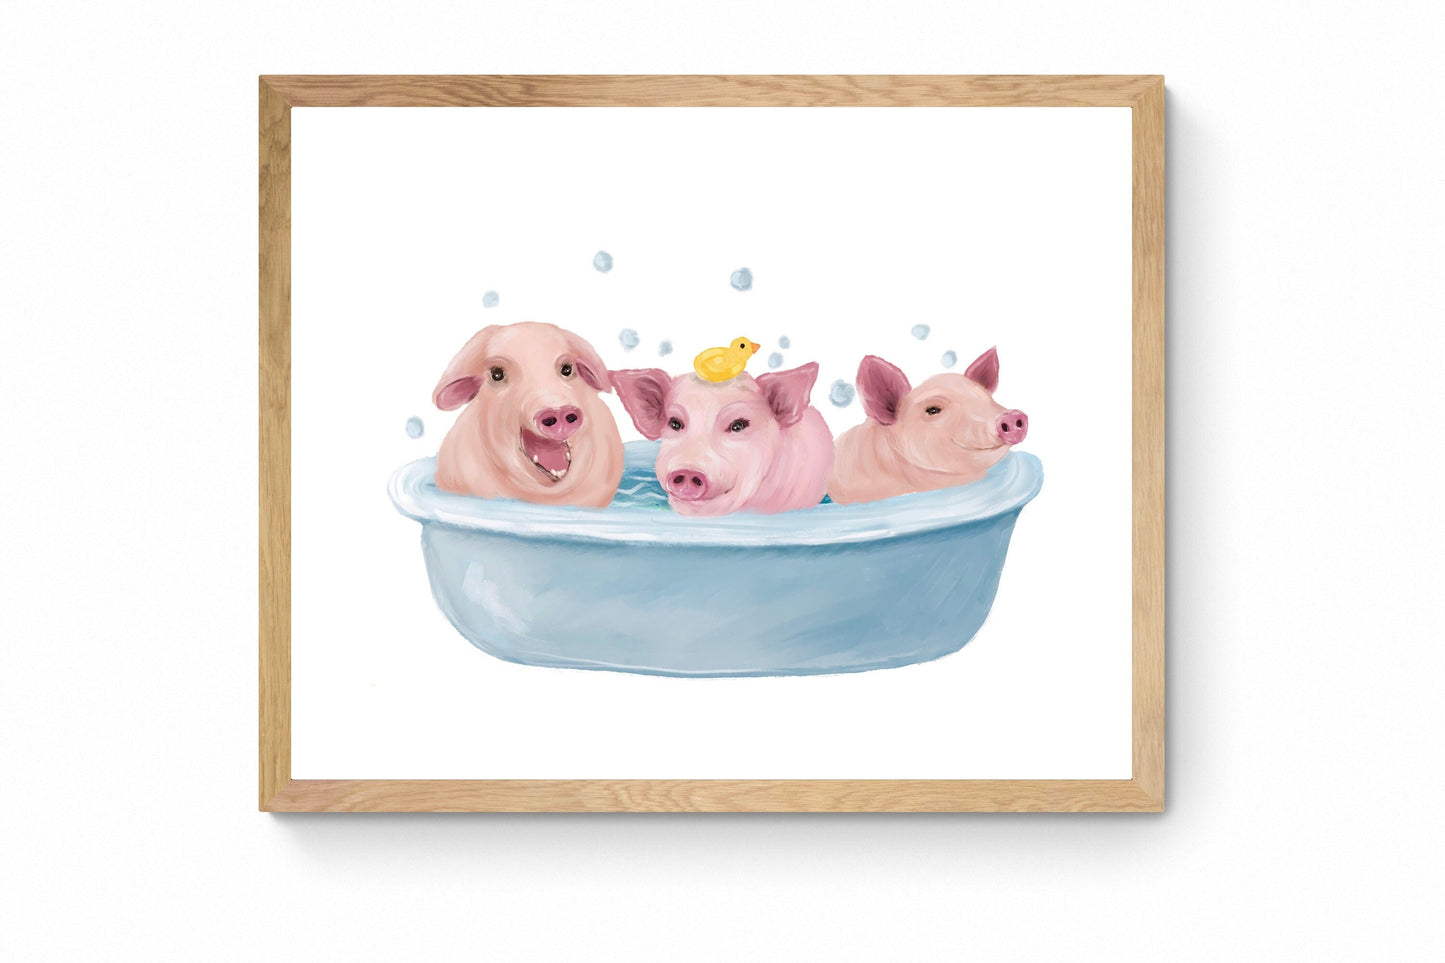 Happy Pigs Taking a Bath, Funny Bathroom Wall Art, Farm Animals in Tub, Piglets Bubble Bathing, Nursery Decor, Kids Wall Art